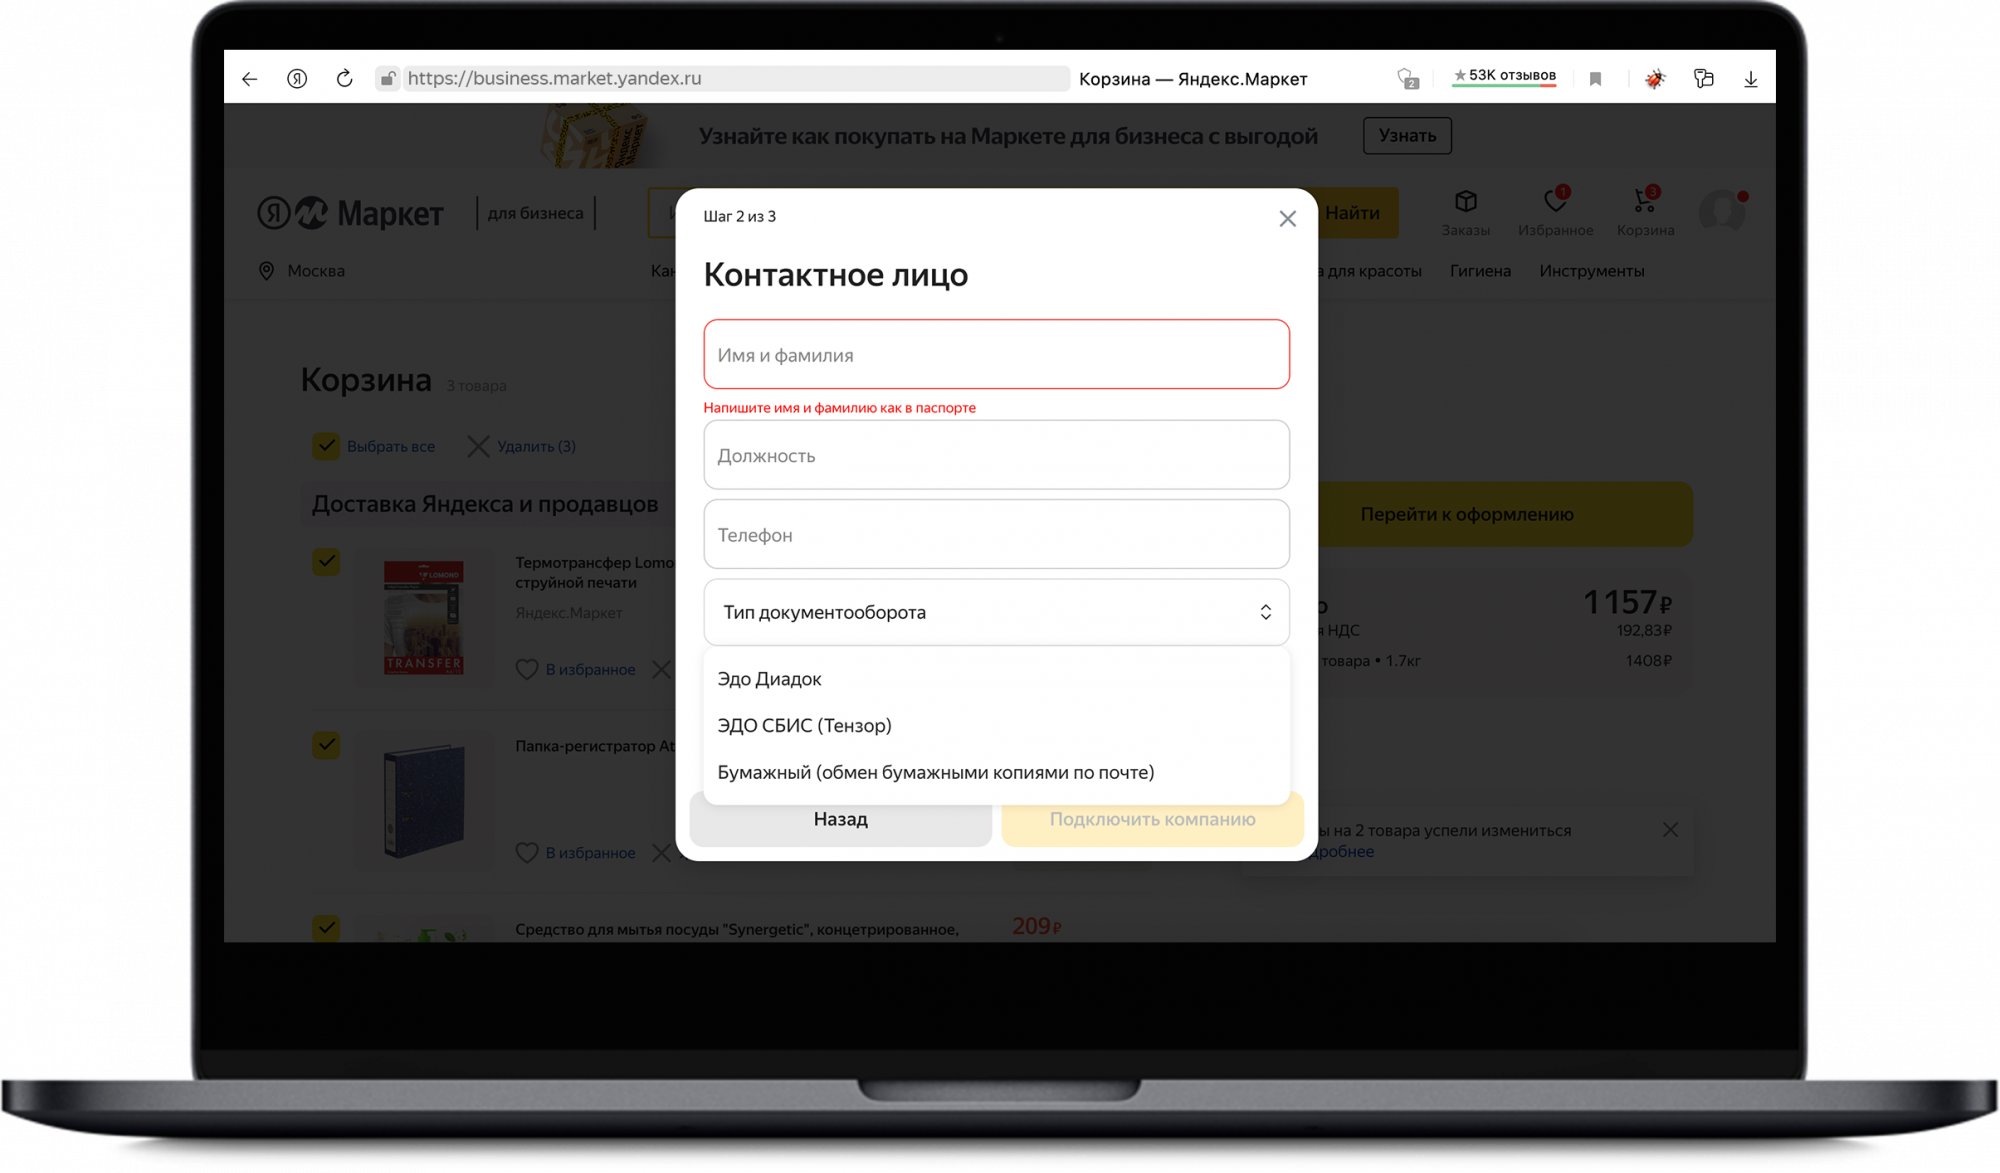 Предпринимателям теперь будет проще зарегистрироваться на Яндекс Маркете